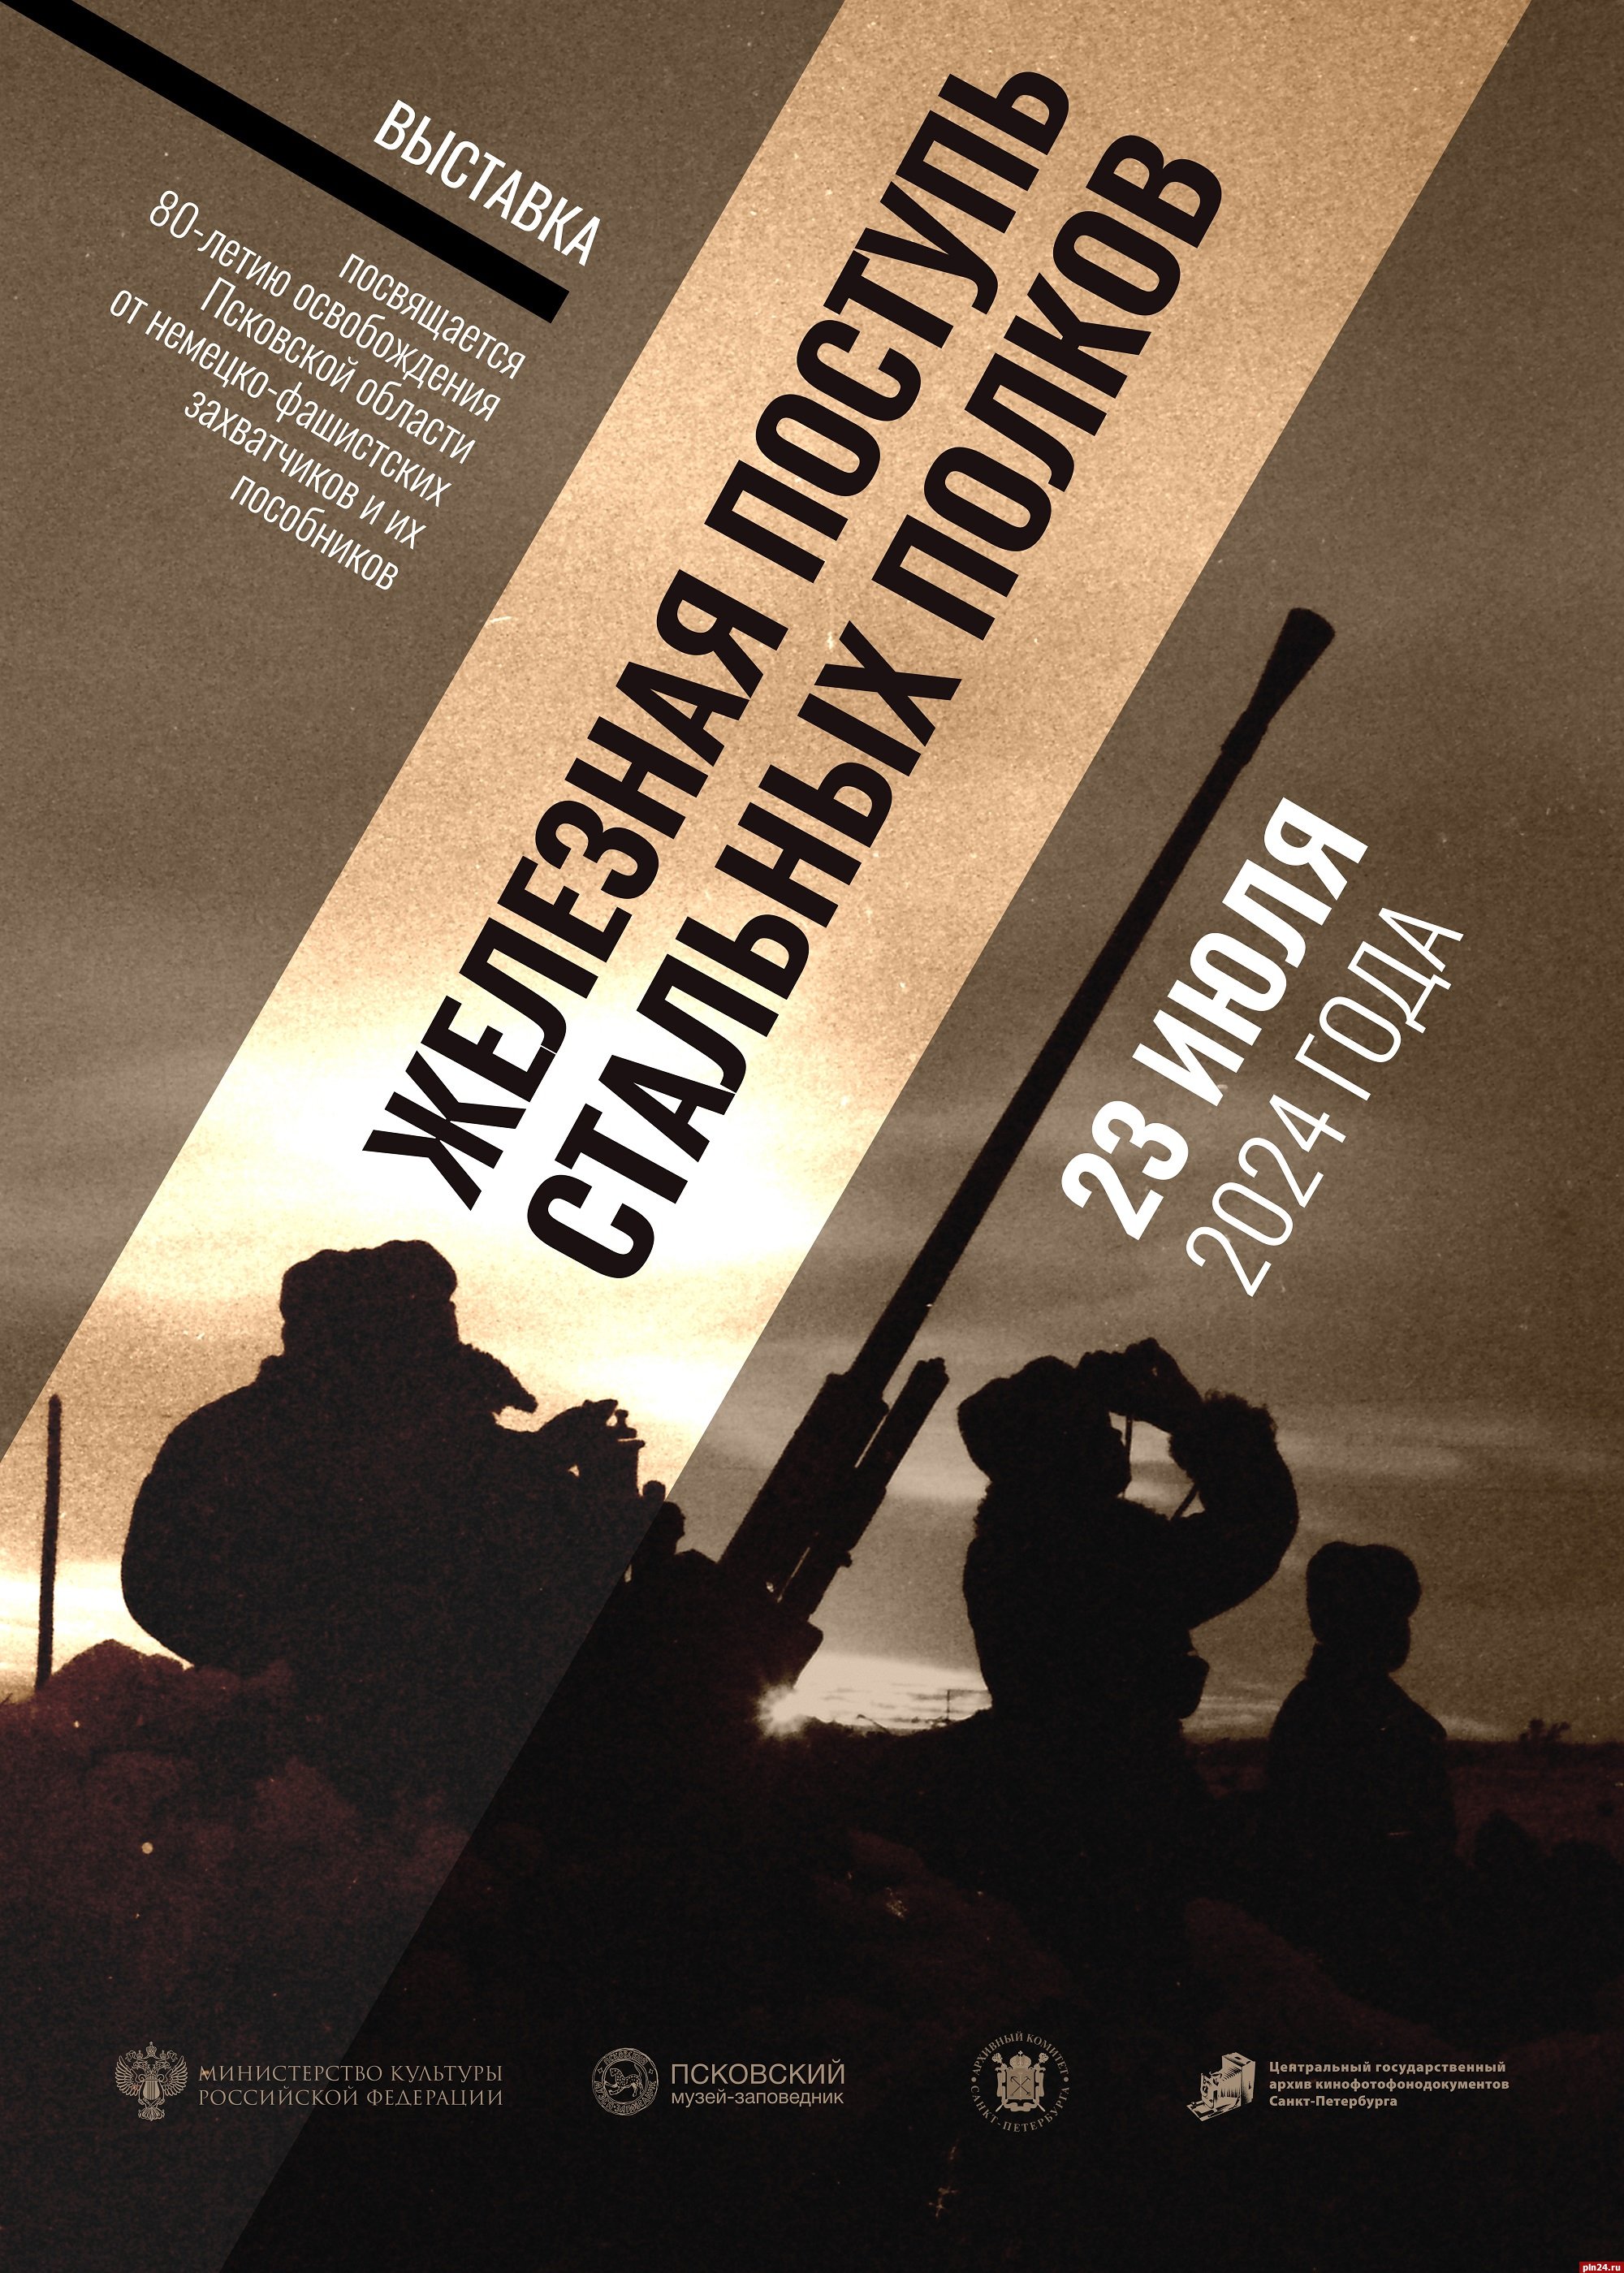 Выставка «Железная поступь стальных полков» откроется в Пскове 23 июля